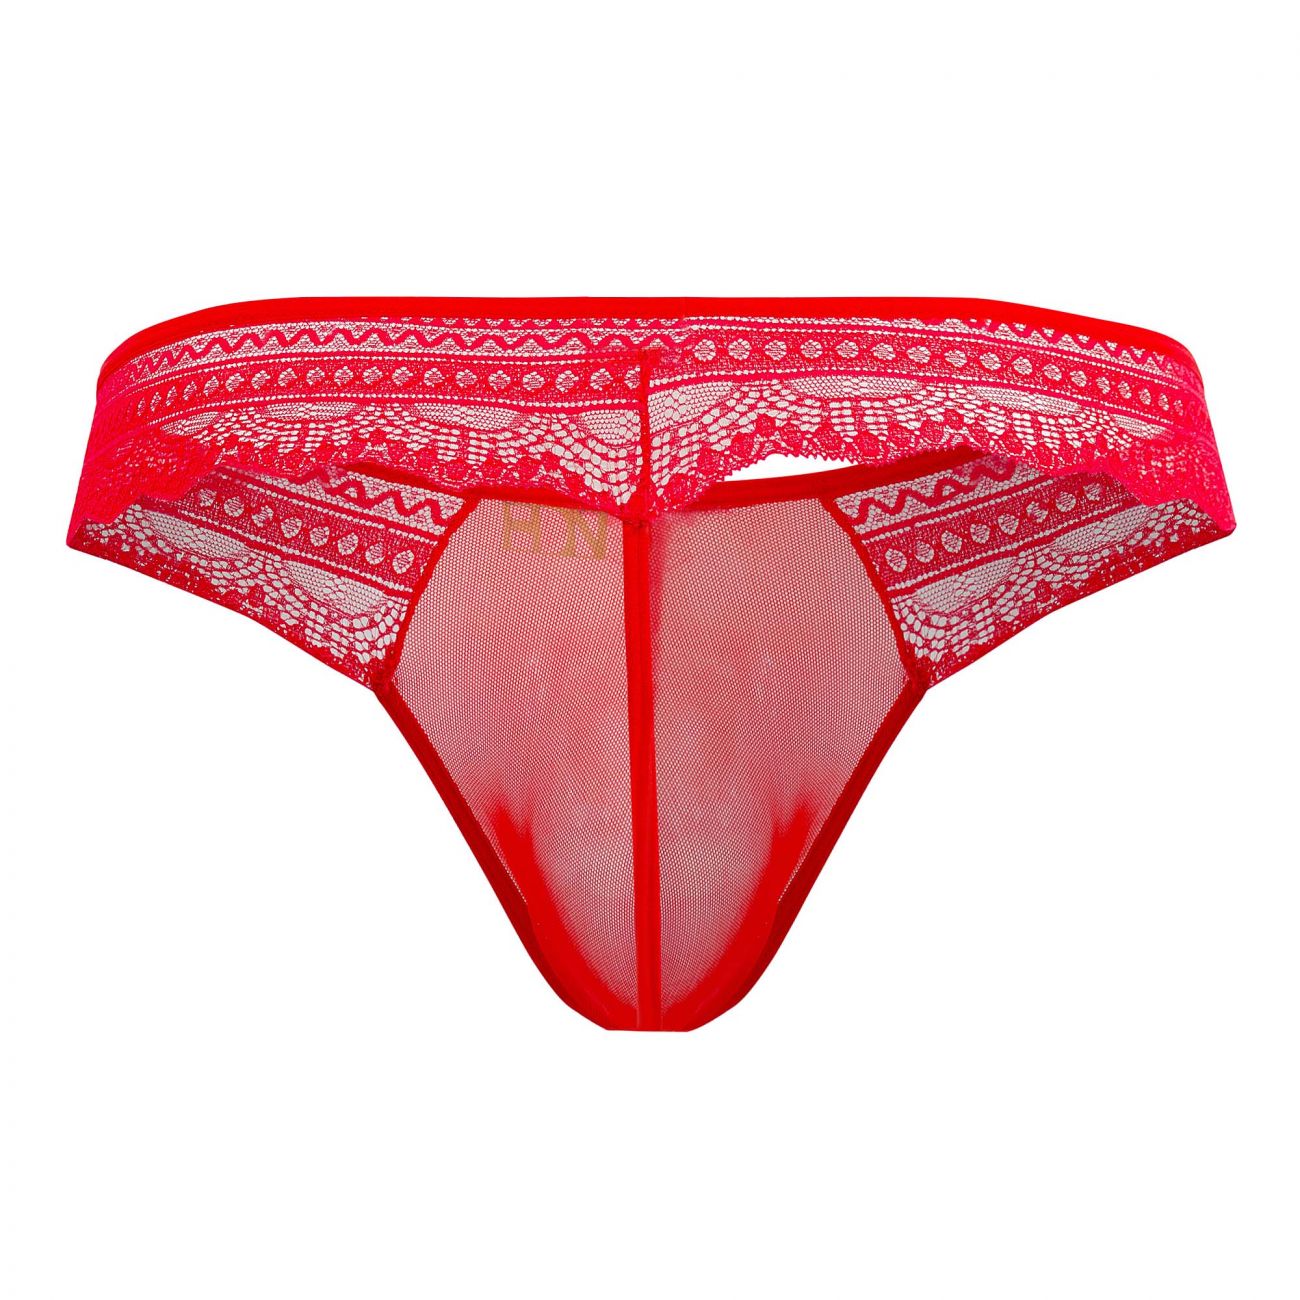 Underwear: Hidden 973 Lace Thongs | eBay